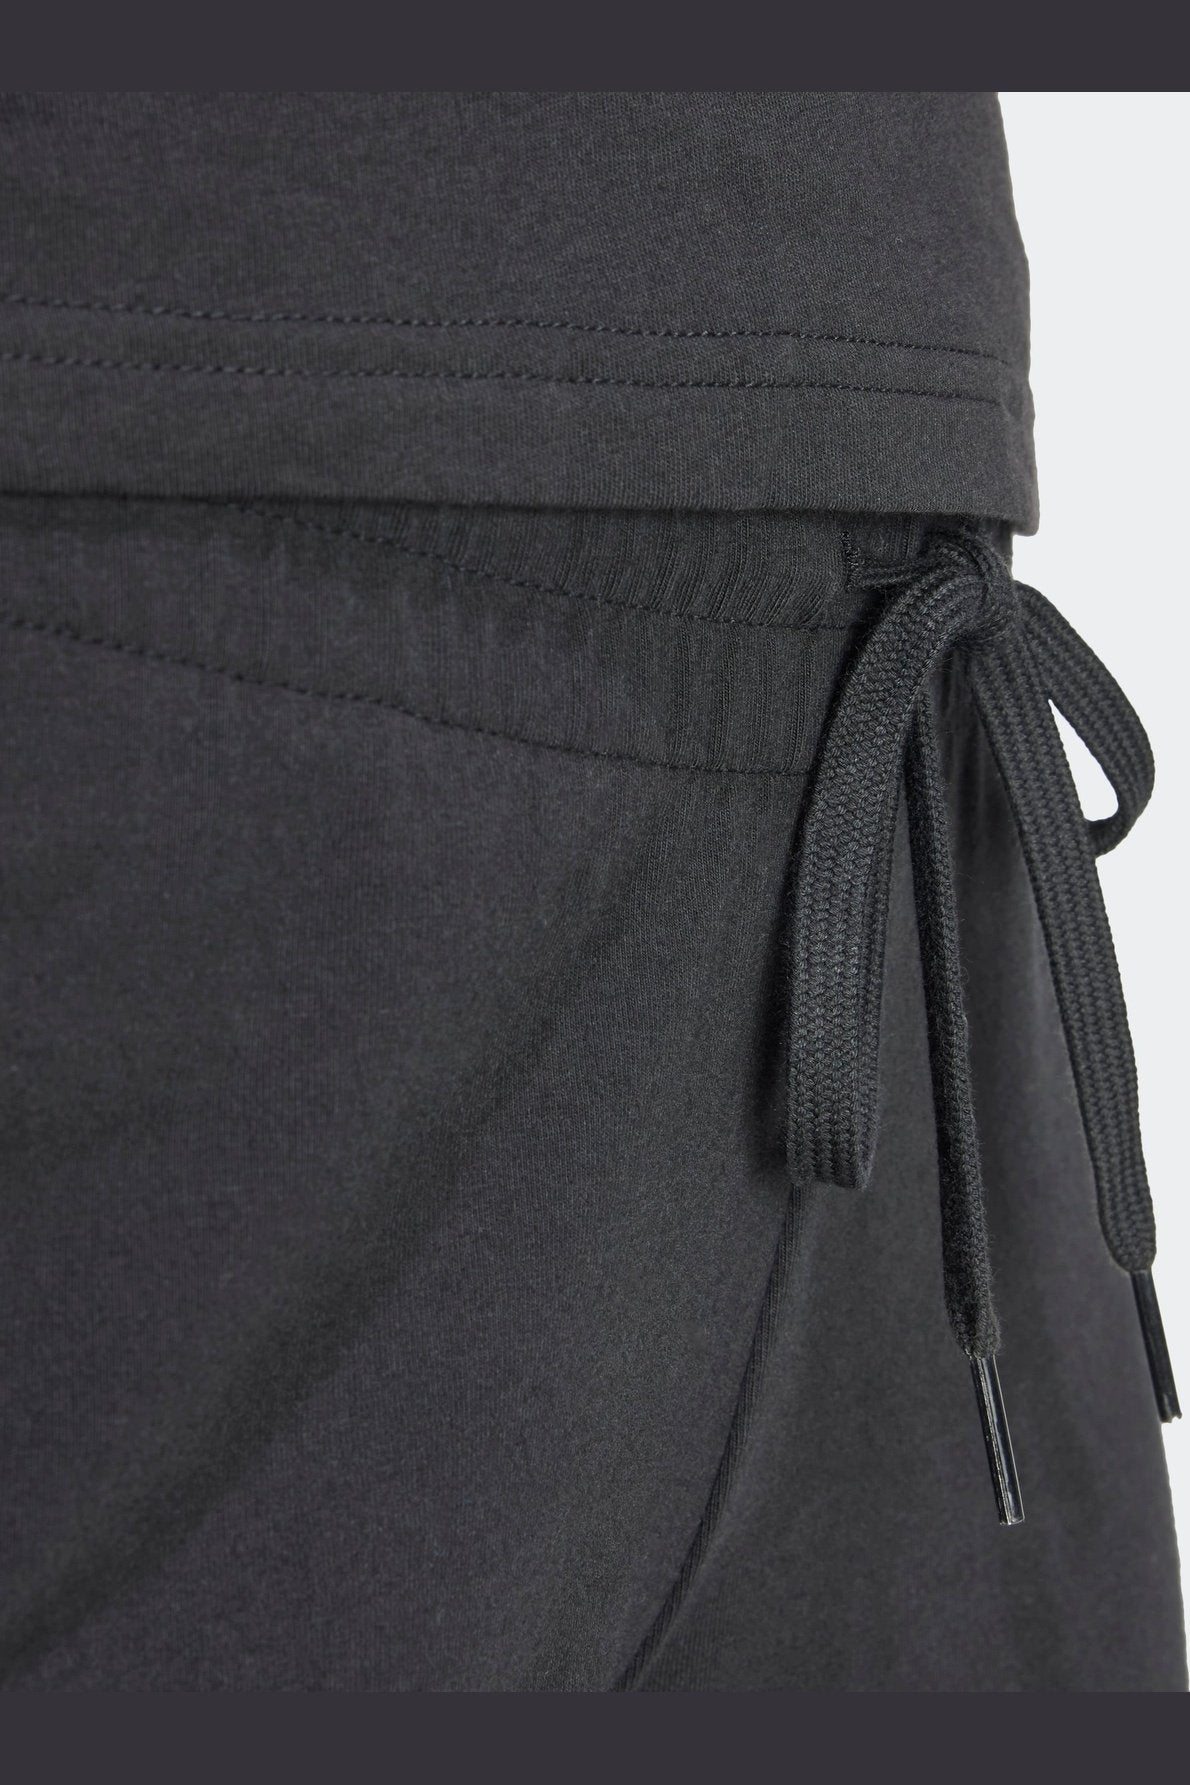 מכנסיים קצרים לנשים ESSENTIALS SLIM 3-STRIPES בצבע שחור ולבן